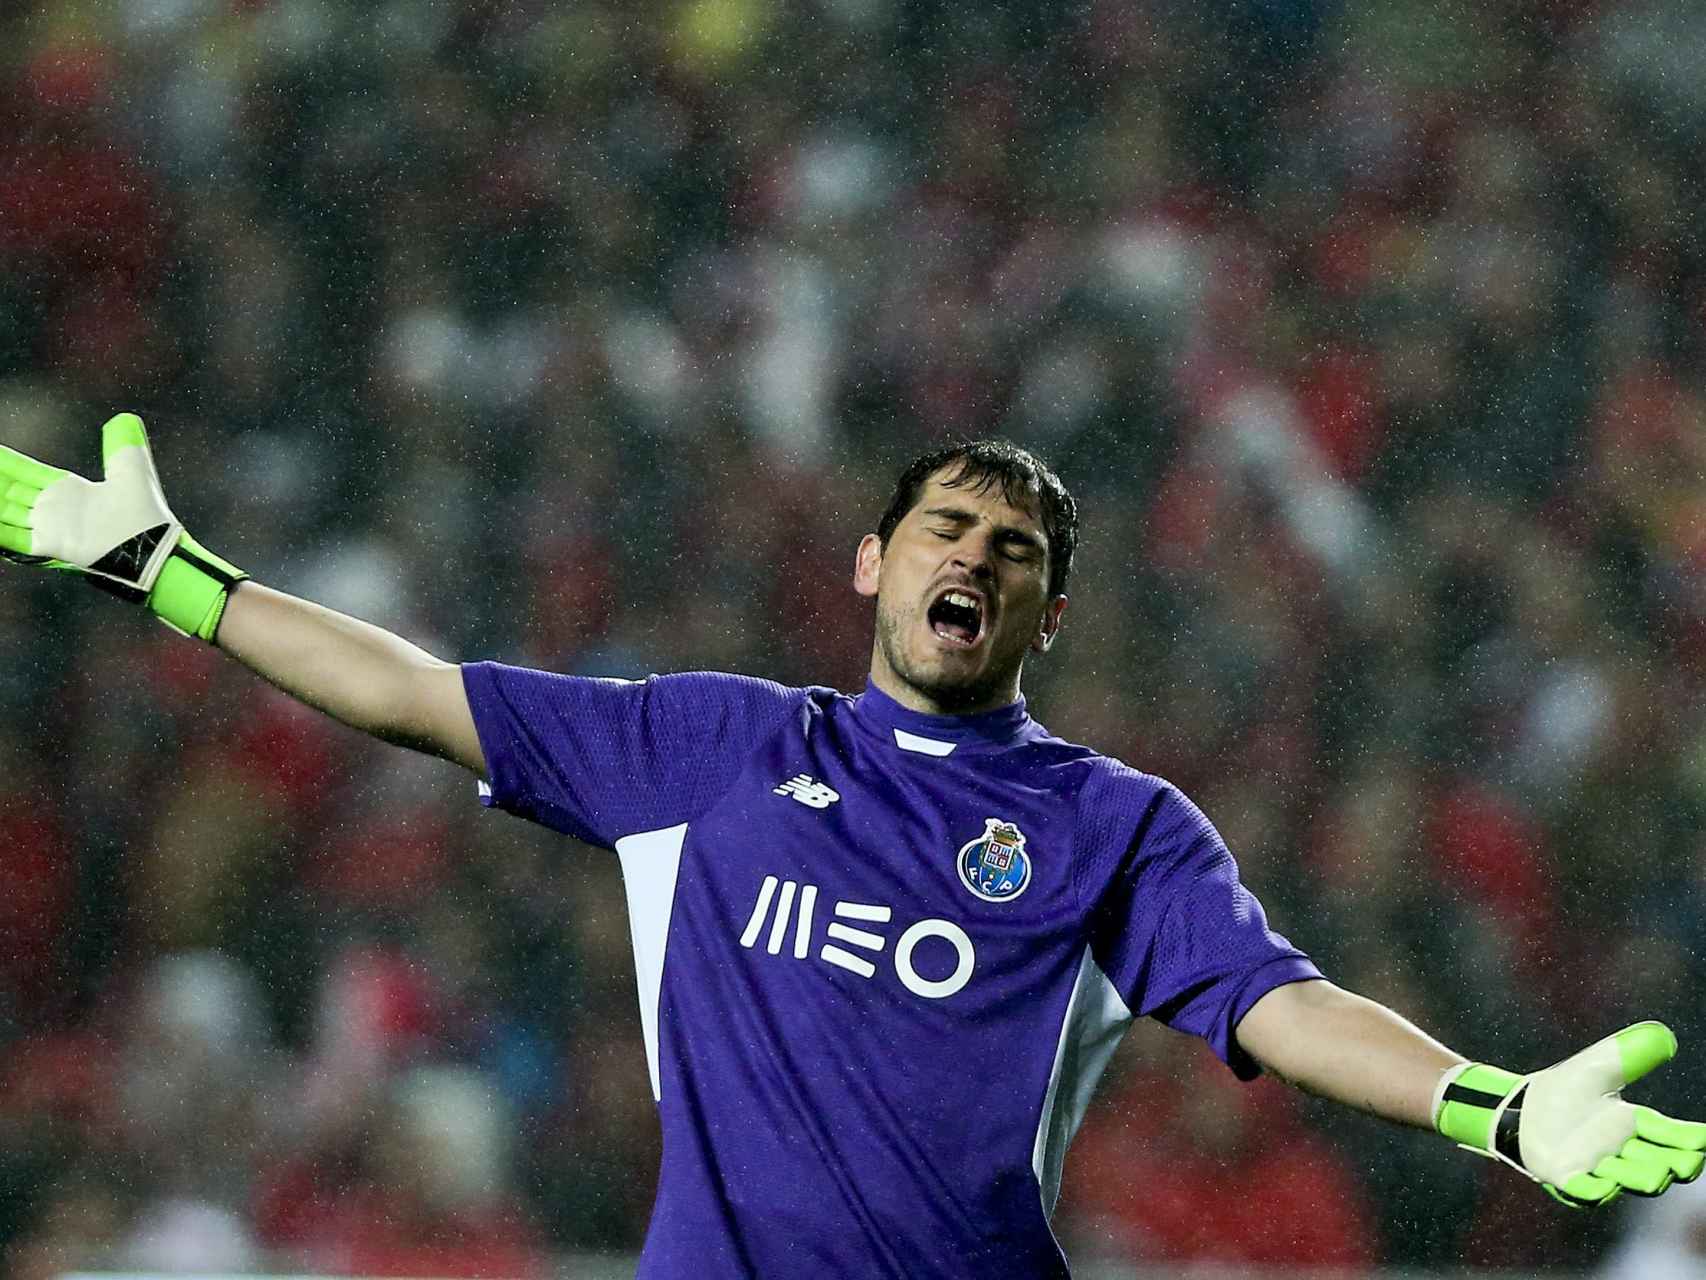 Iker Casillas, en un partido con el Oporto.